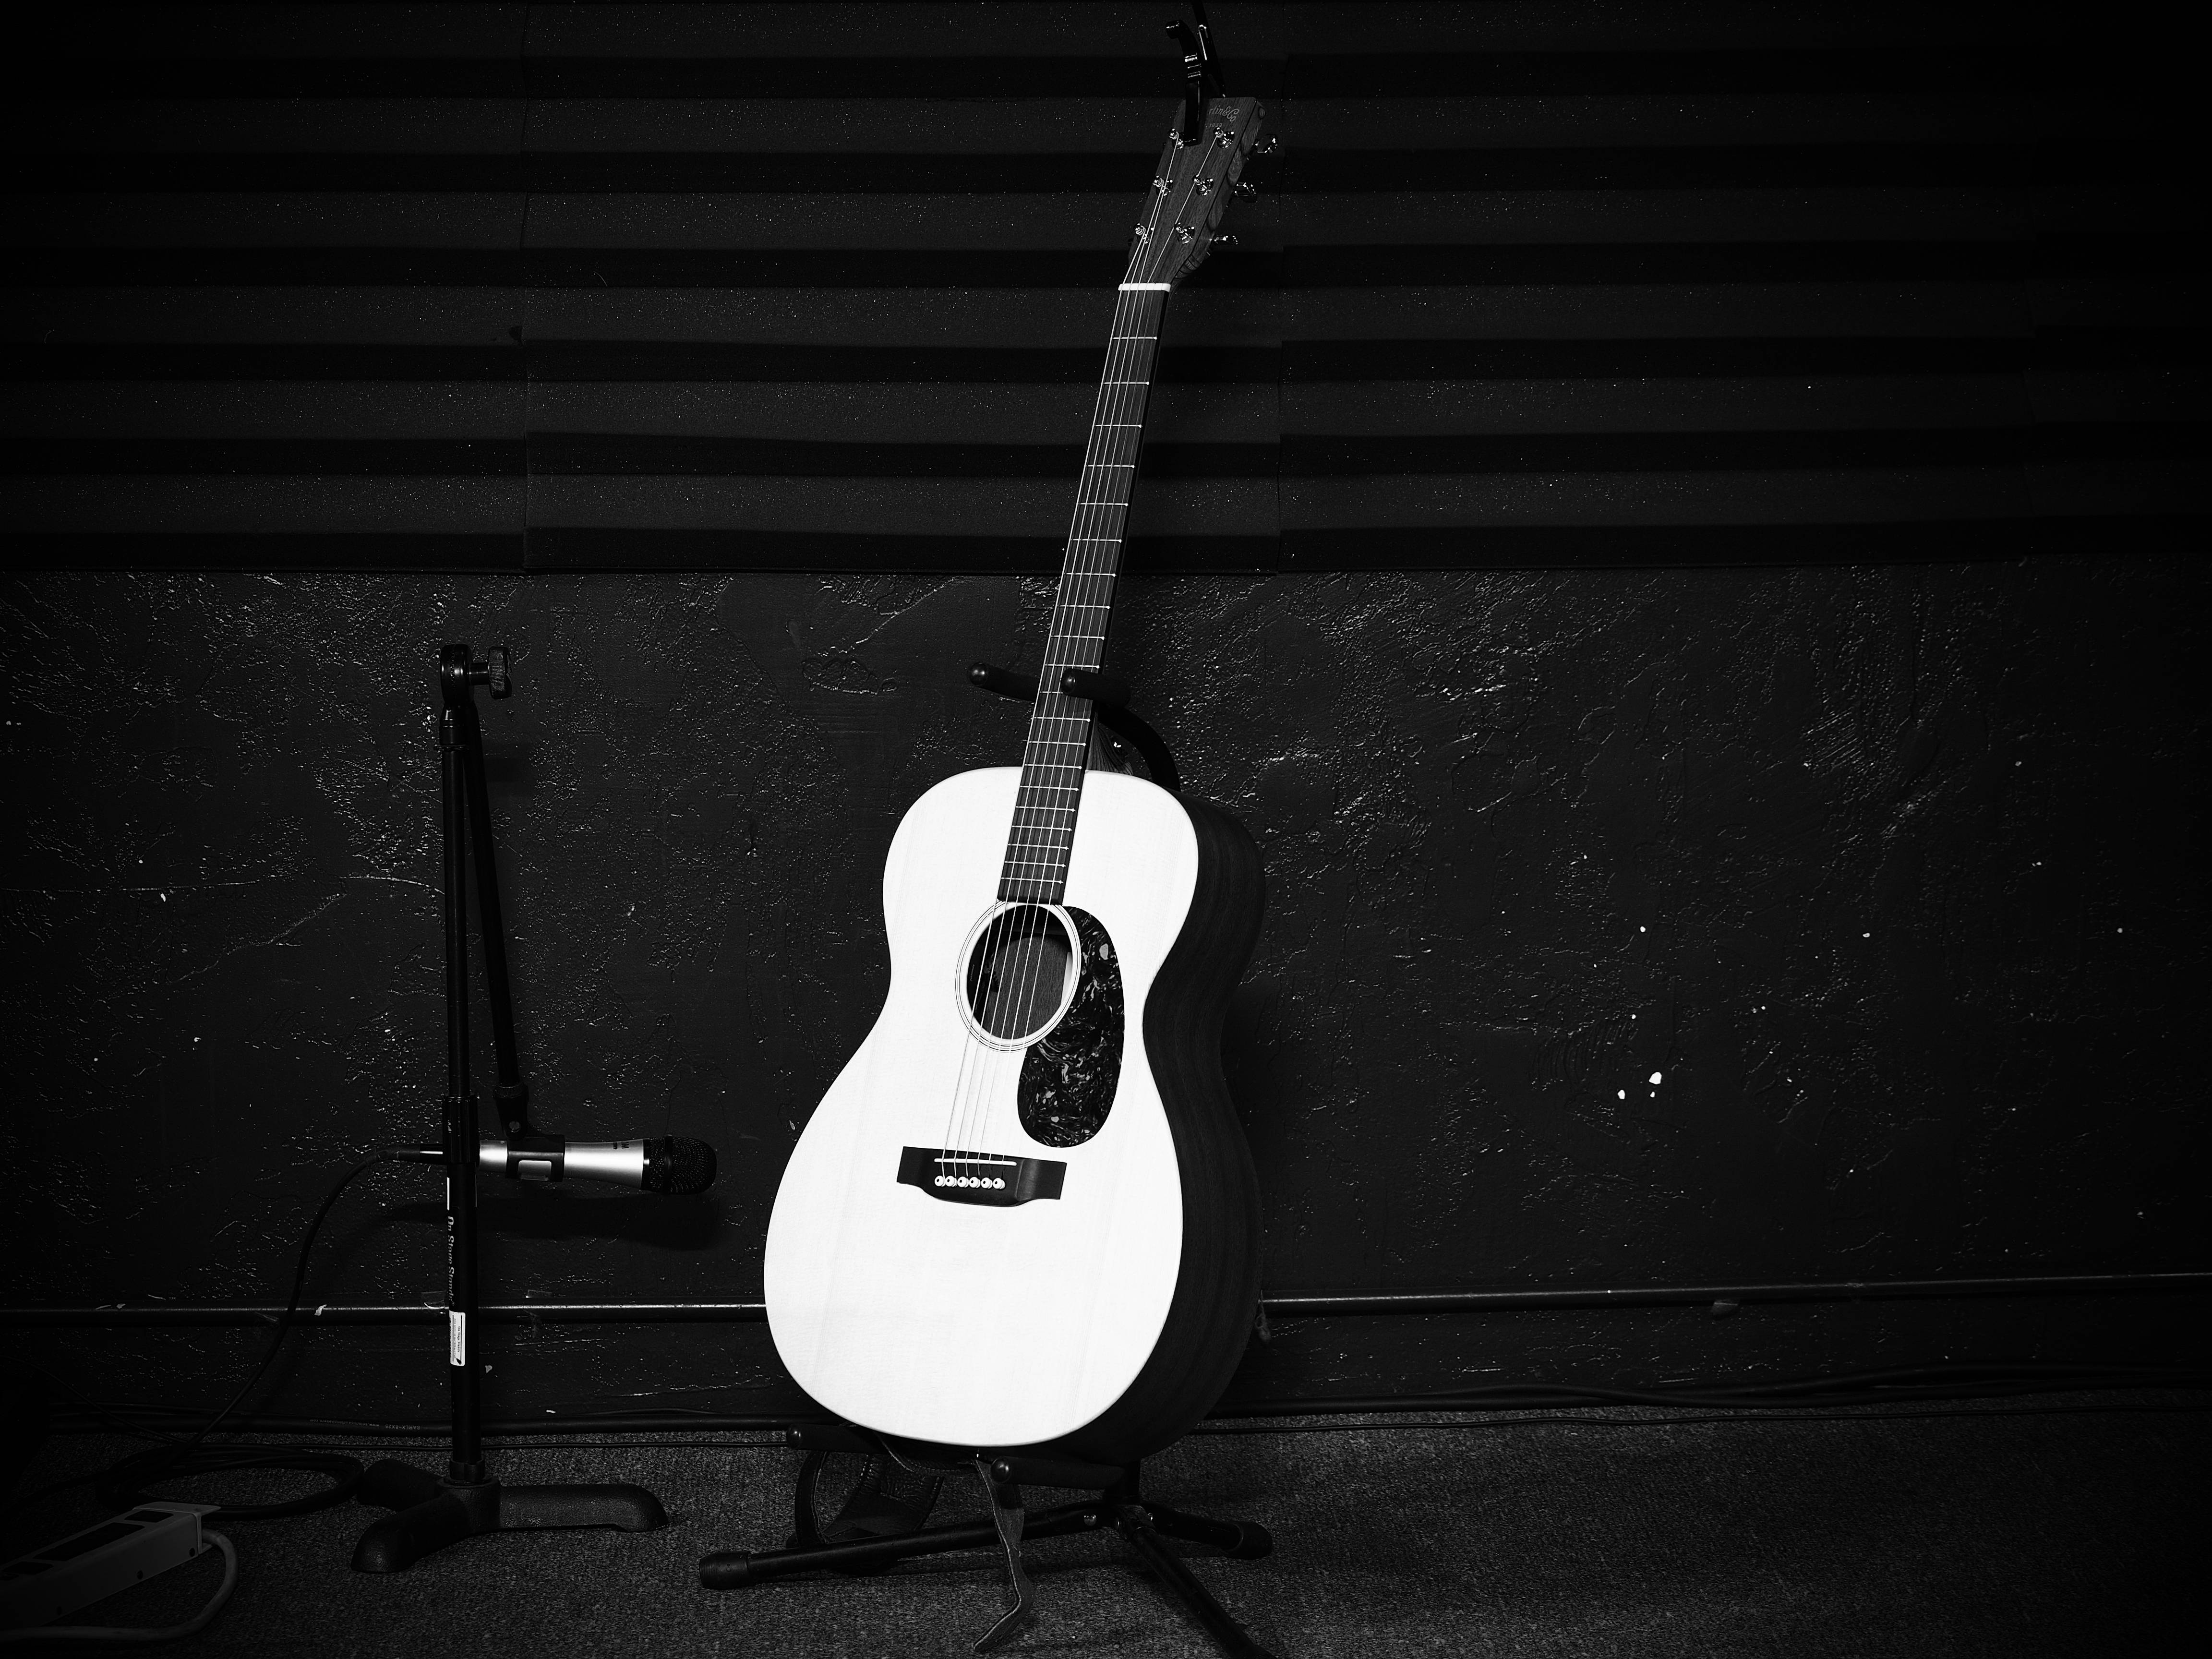 Обои музыка, свет, черно-белый, белый, фотографии, гитара, акустическая гитара - бесплатные картинки на Fonwall